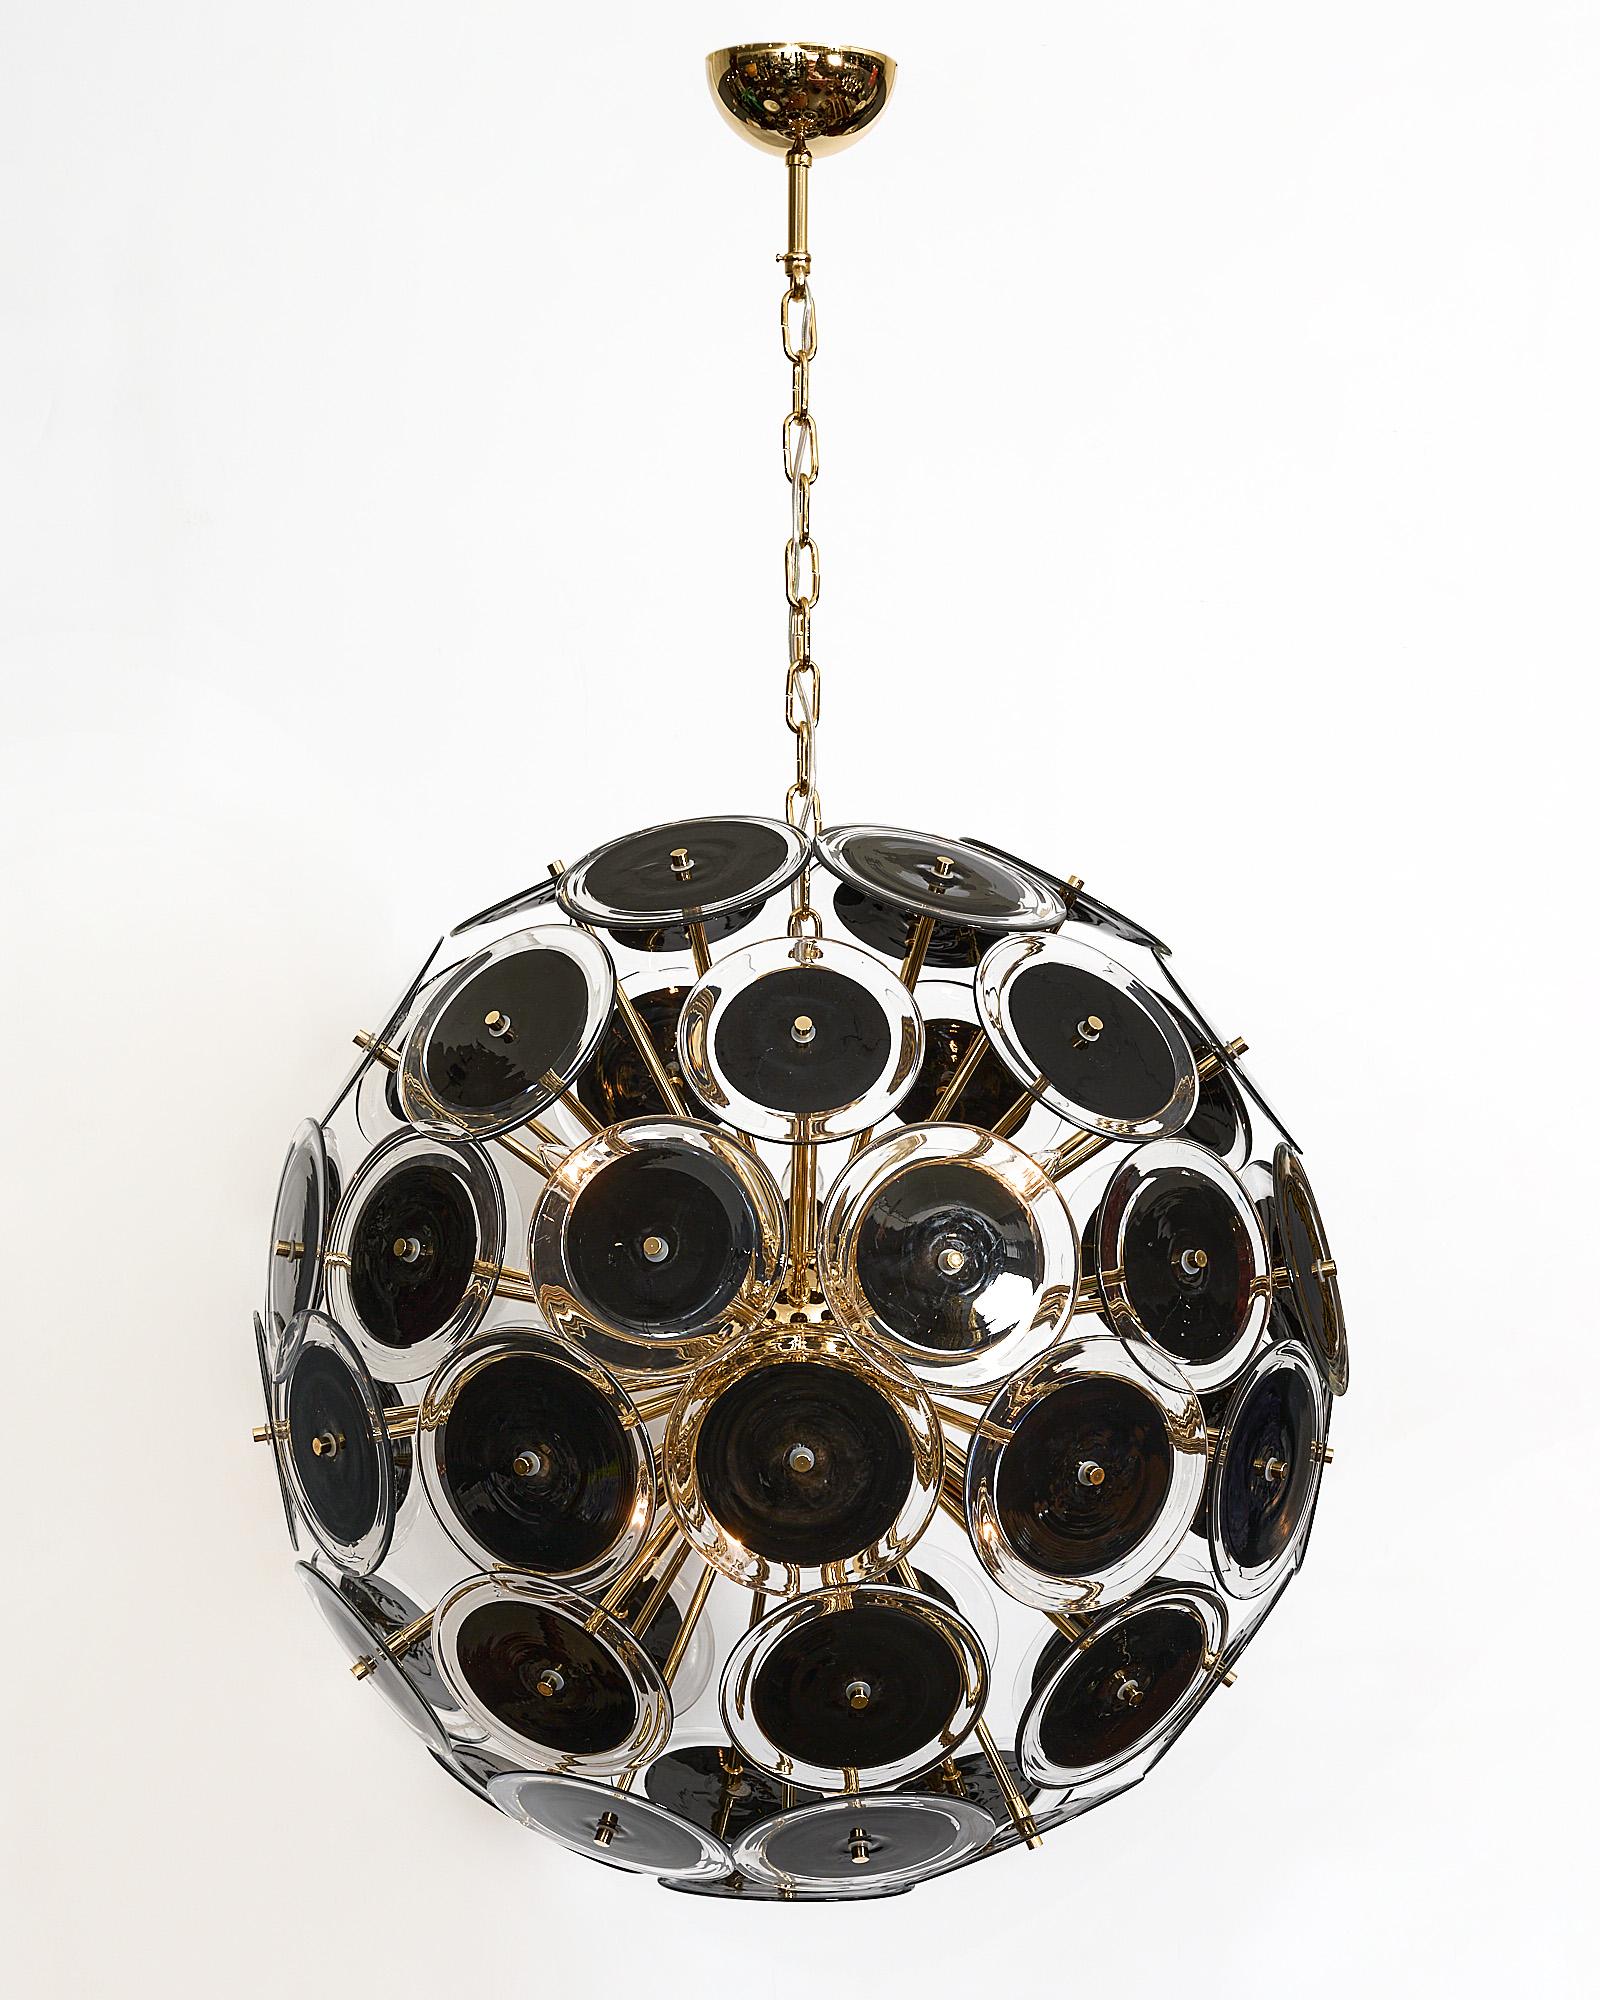 Kronleuchter aus Murano-Glas in Sputnik-Form mit schönen mundgeblasenen Glasscheiben. Jedes Scheibenelement besteht aus undurchsichtigem, schwarzem Glas, das mit klarem Glas umrandet ist. Es wurde neu verkabelt, um den US-Standards zu